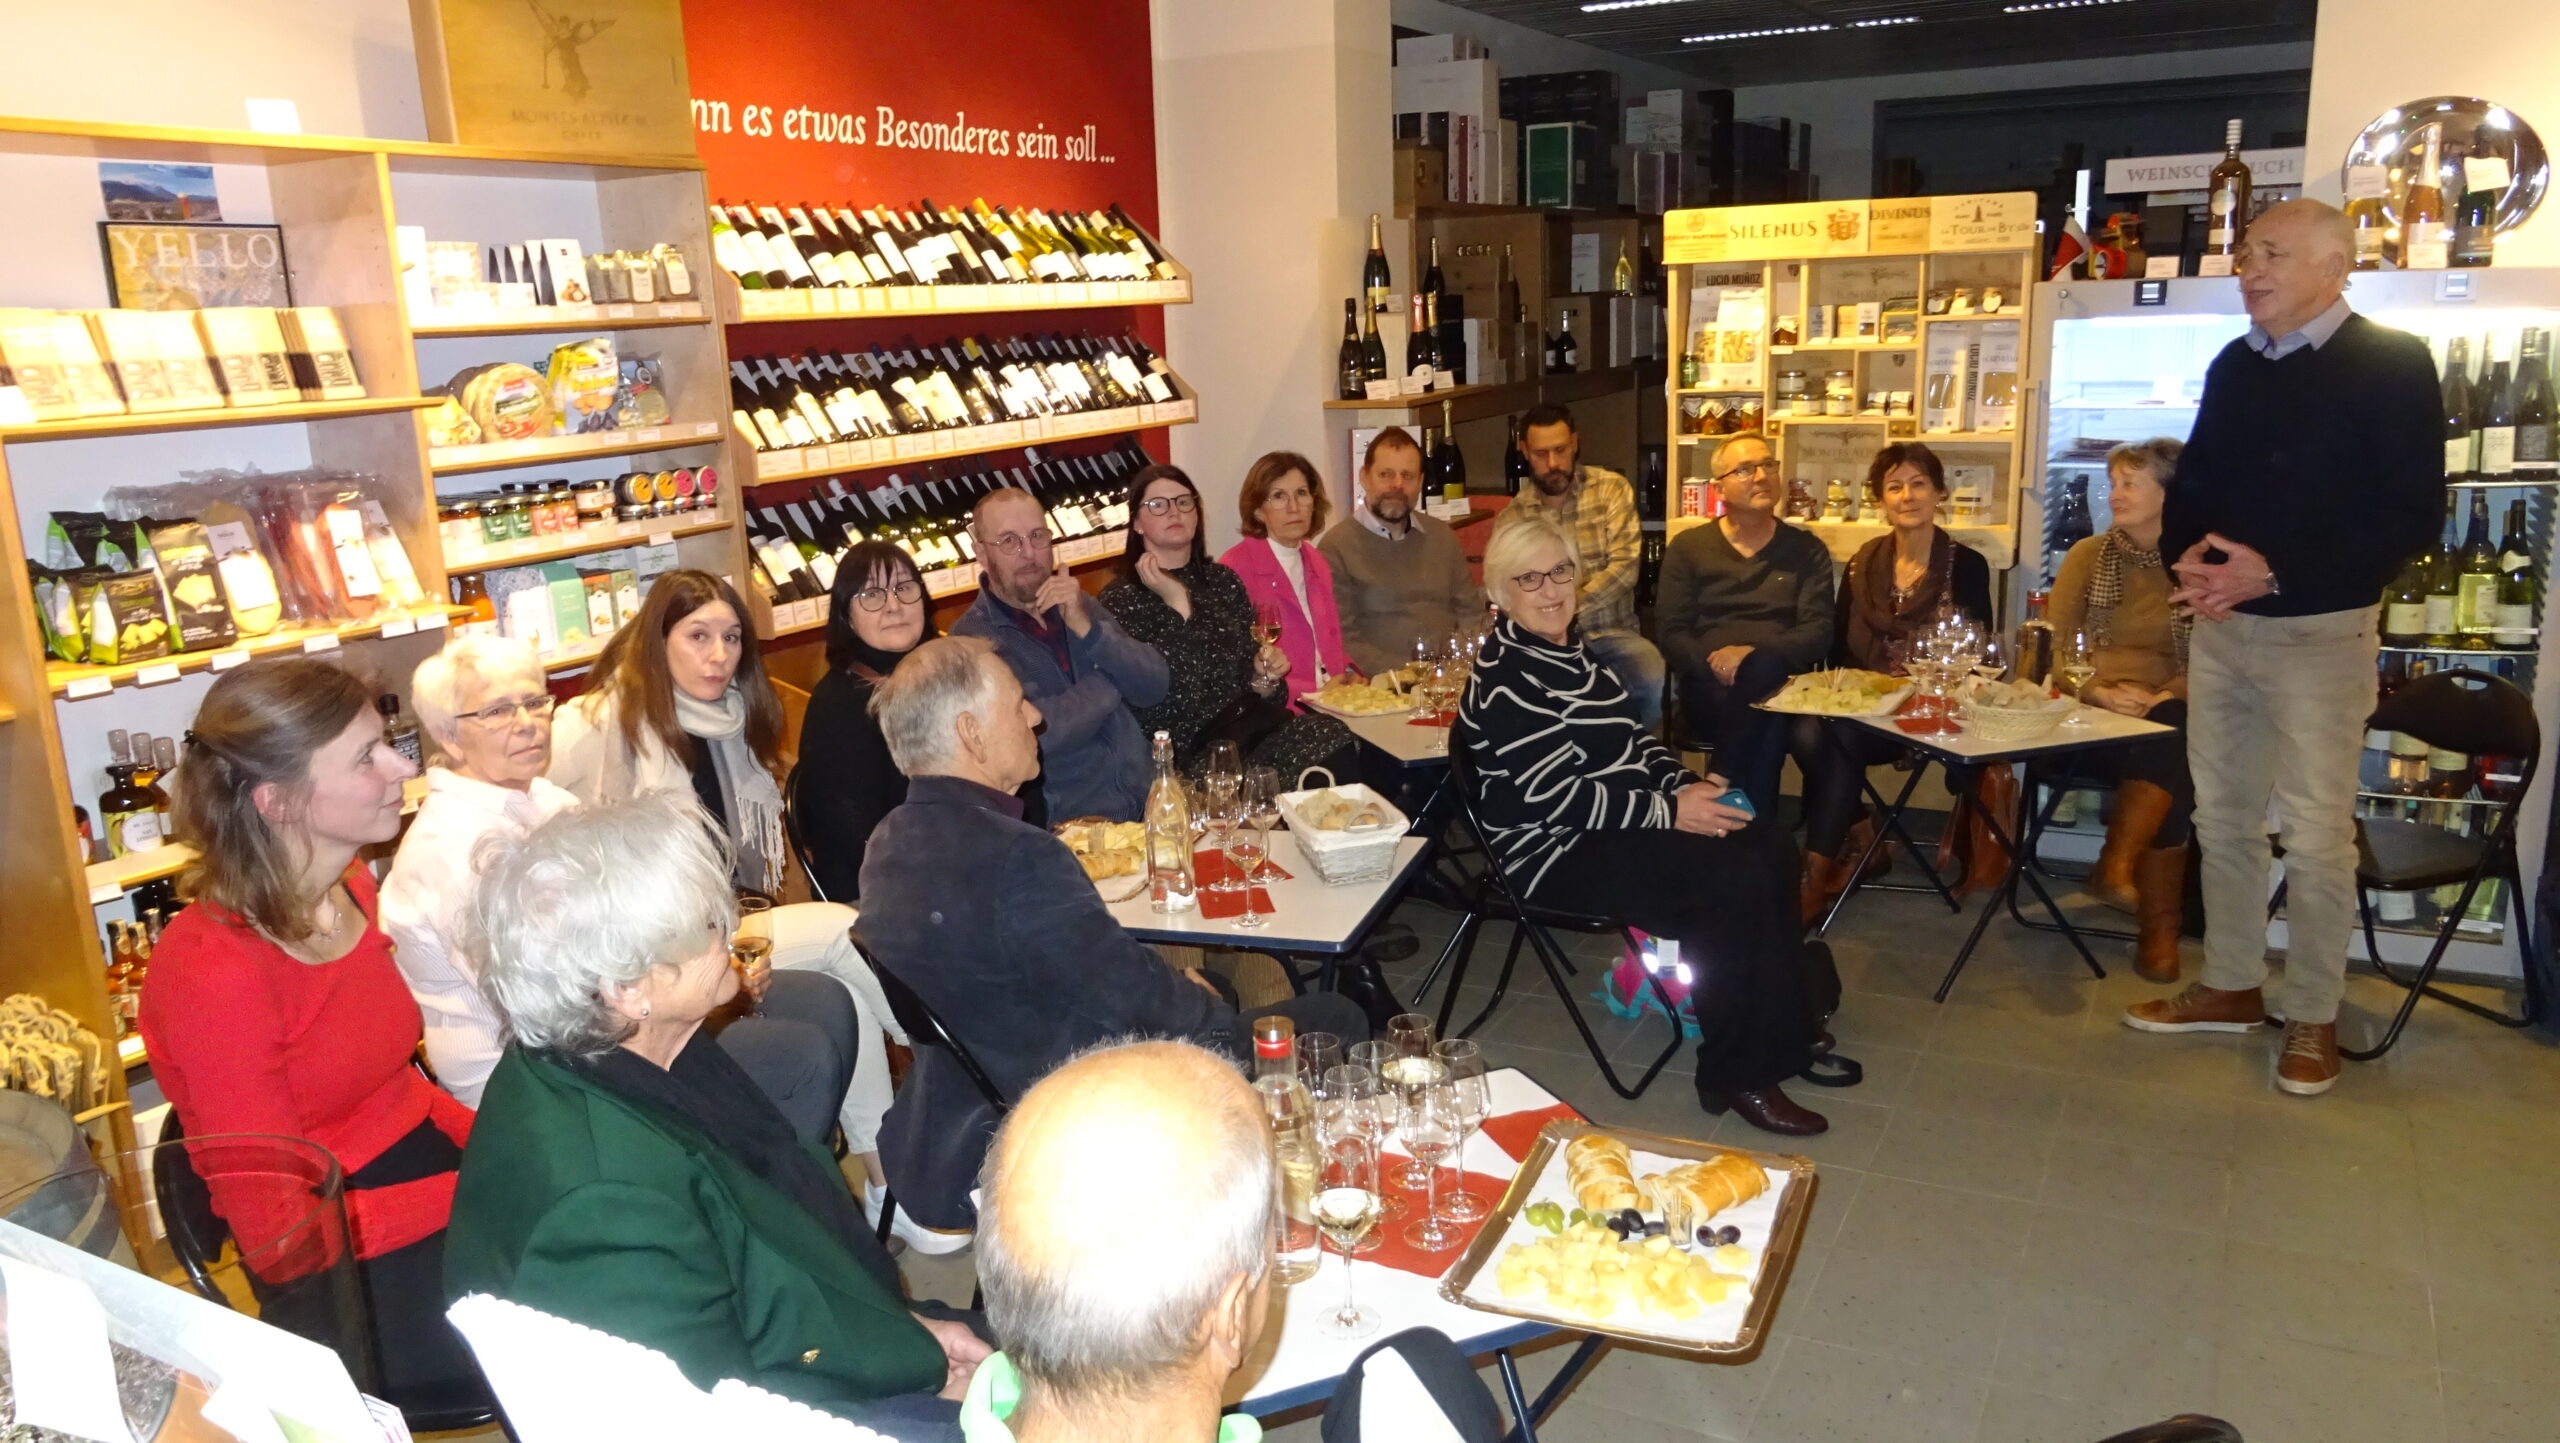 Februar 2023 - Stiftung Horizonte, Weinverkostung zu Gunsten der Schulmaterialienkammer